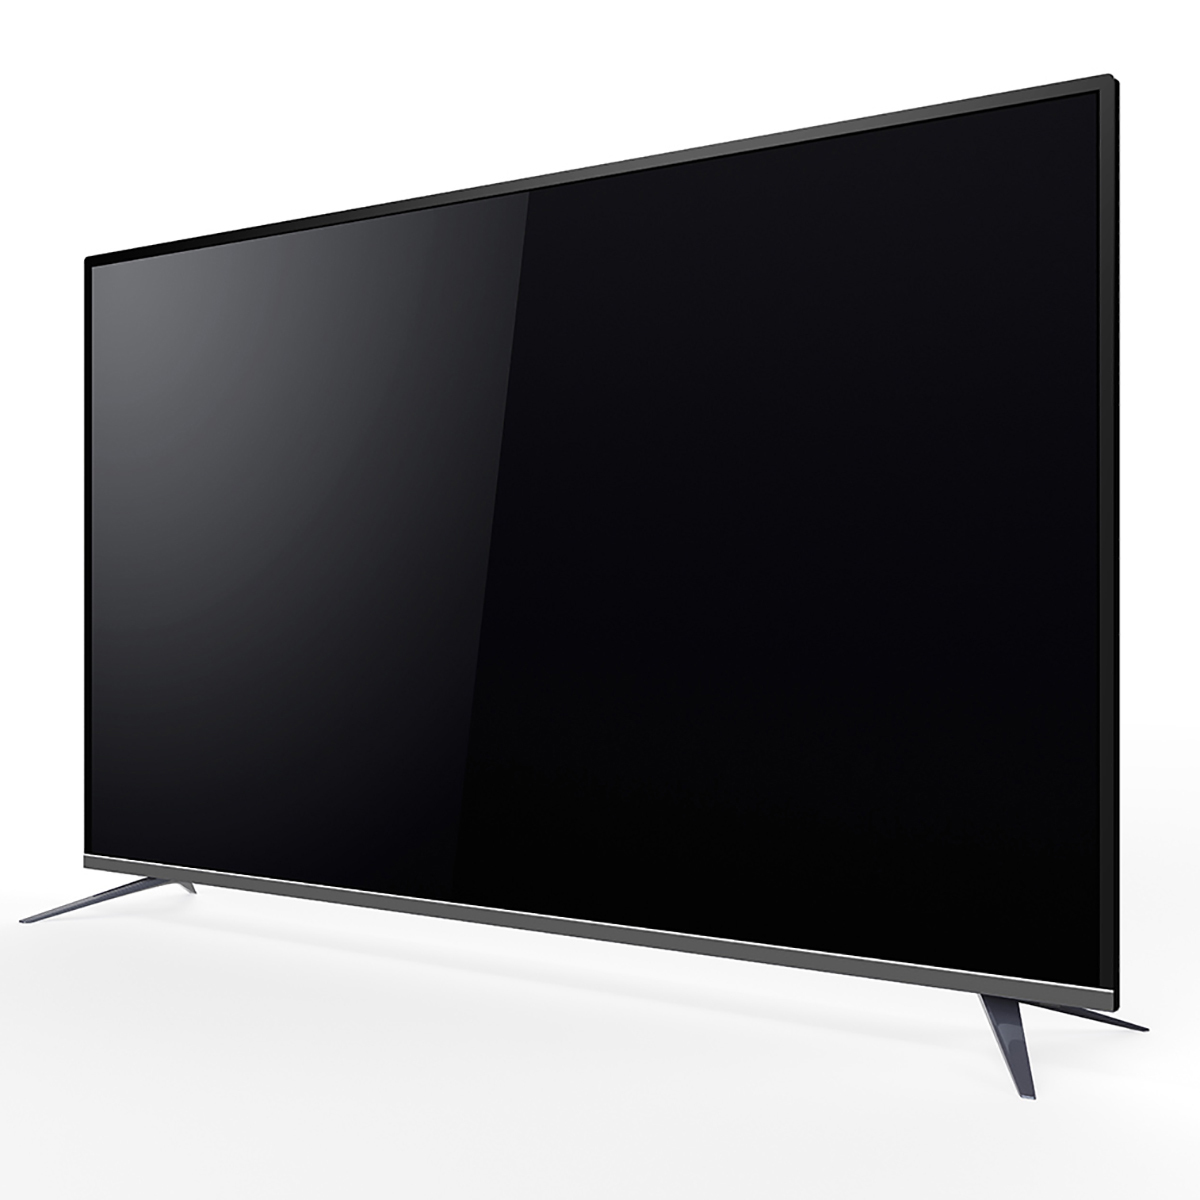 제노스 UHD TV CO750LHDR 189cm (75)